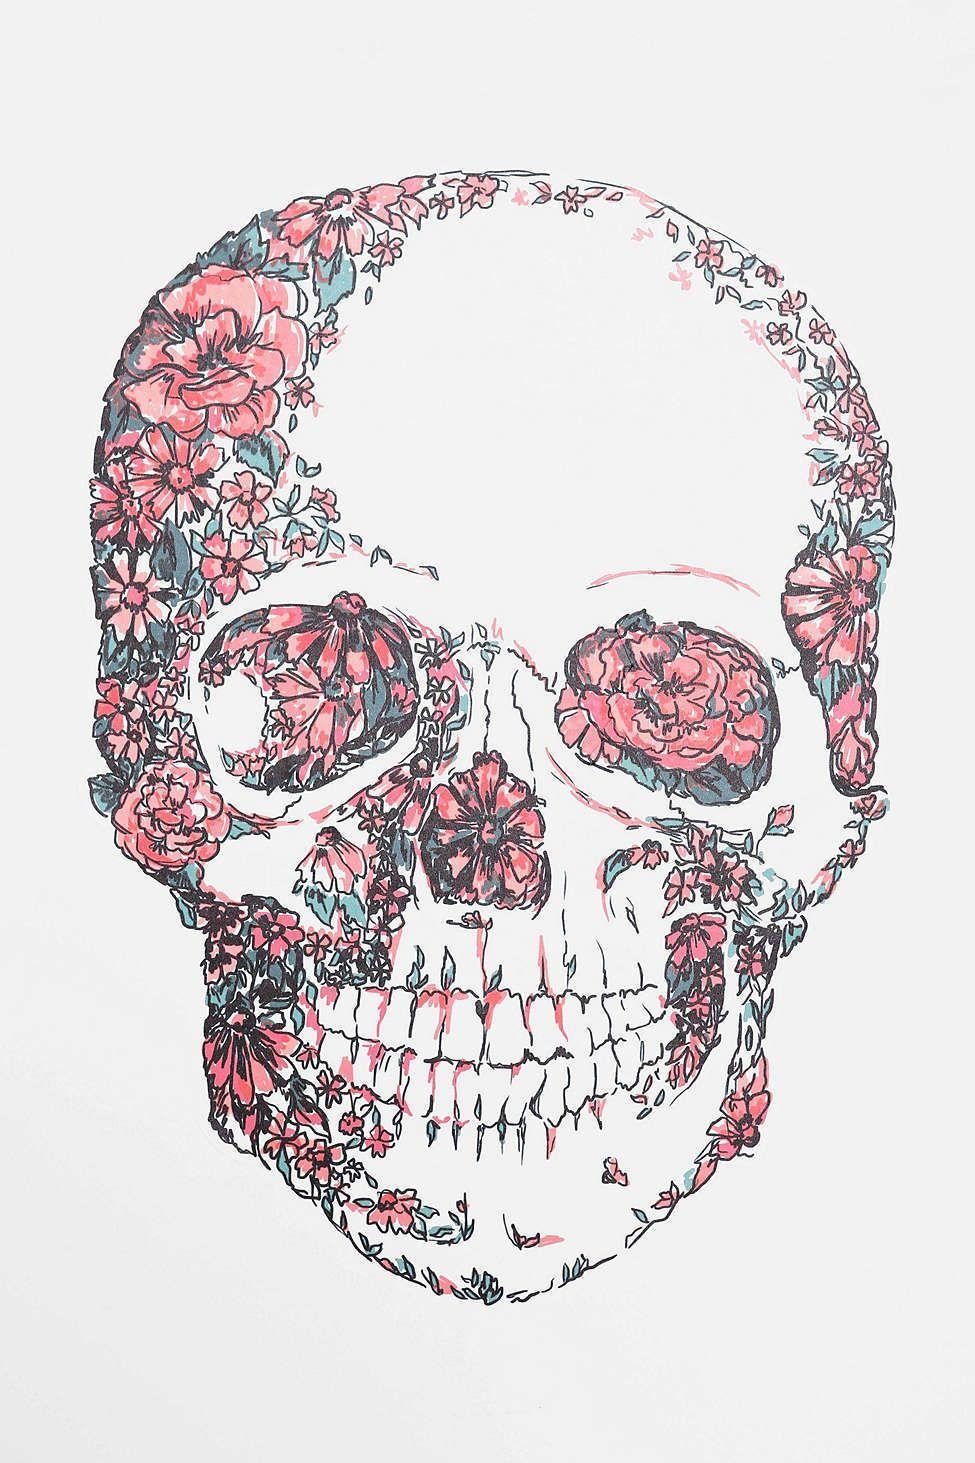 Girly skull wallpaper  Skull wallpaper Black skulls wallpaper Pink skull  wallpaper